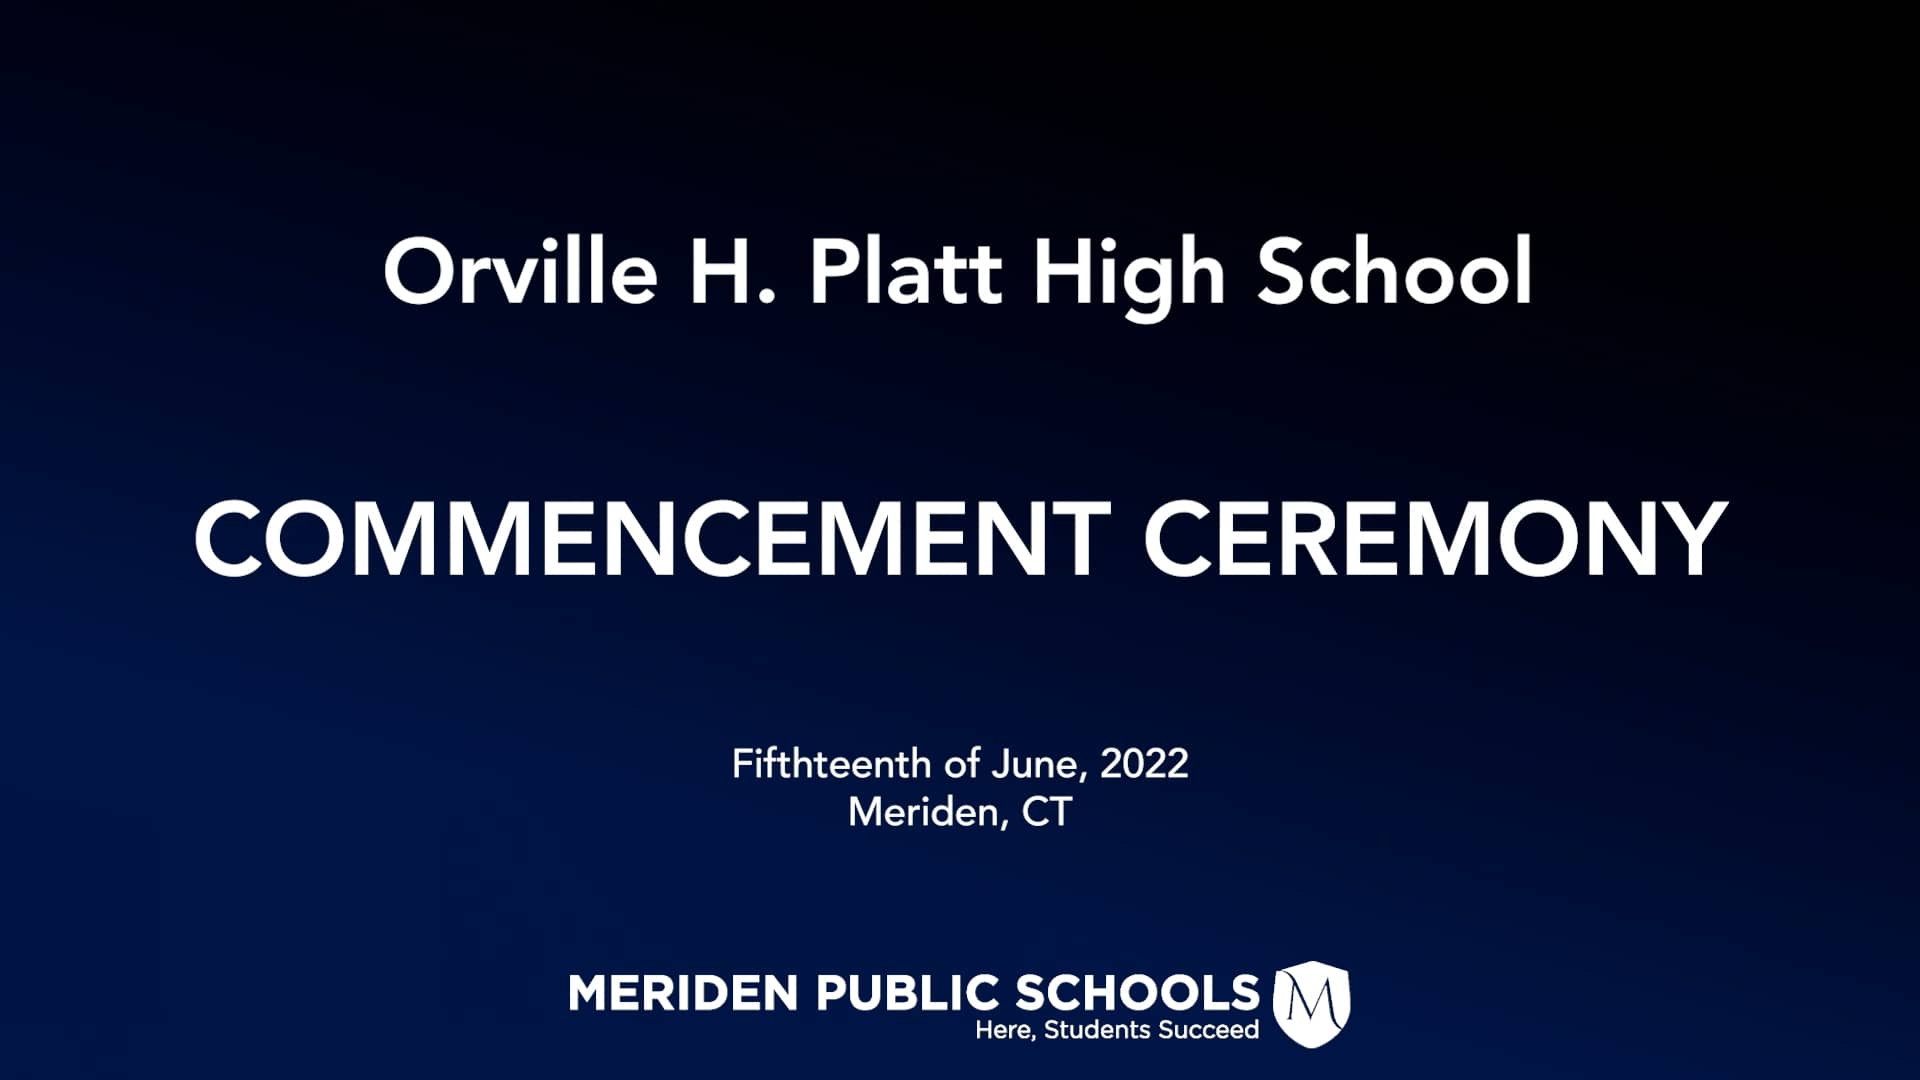 Orville H. Platt High School Graduation 2022 on Vimeo